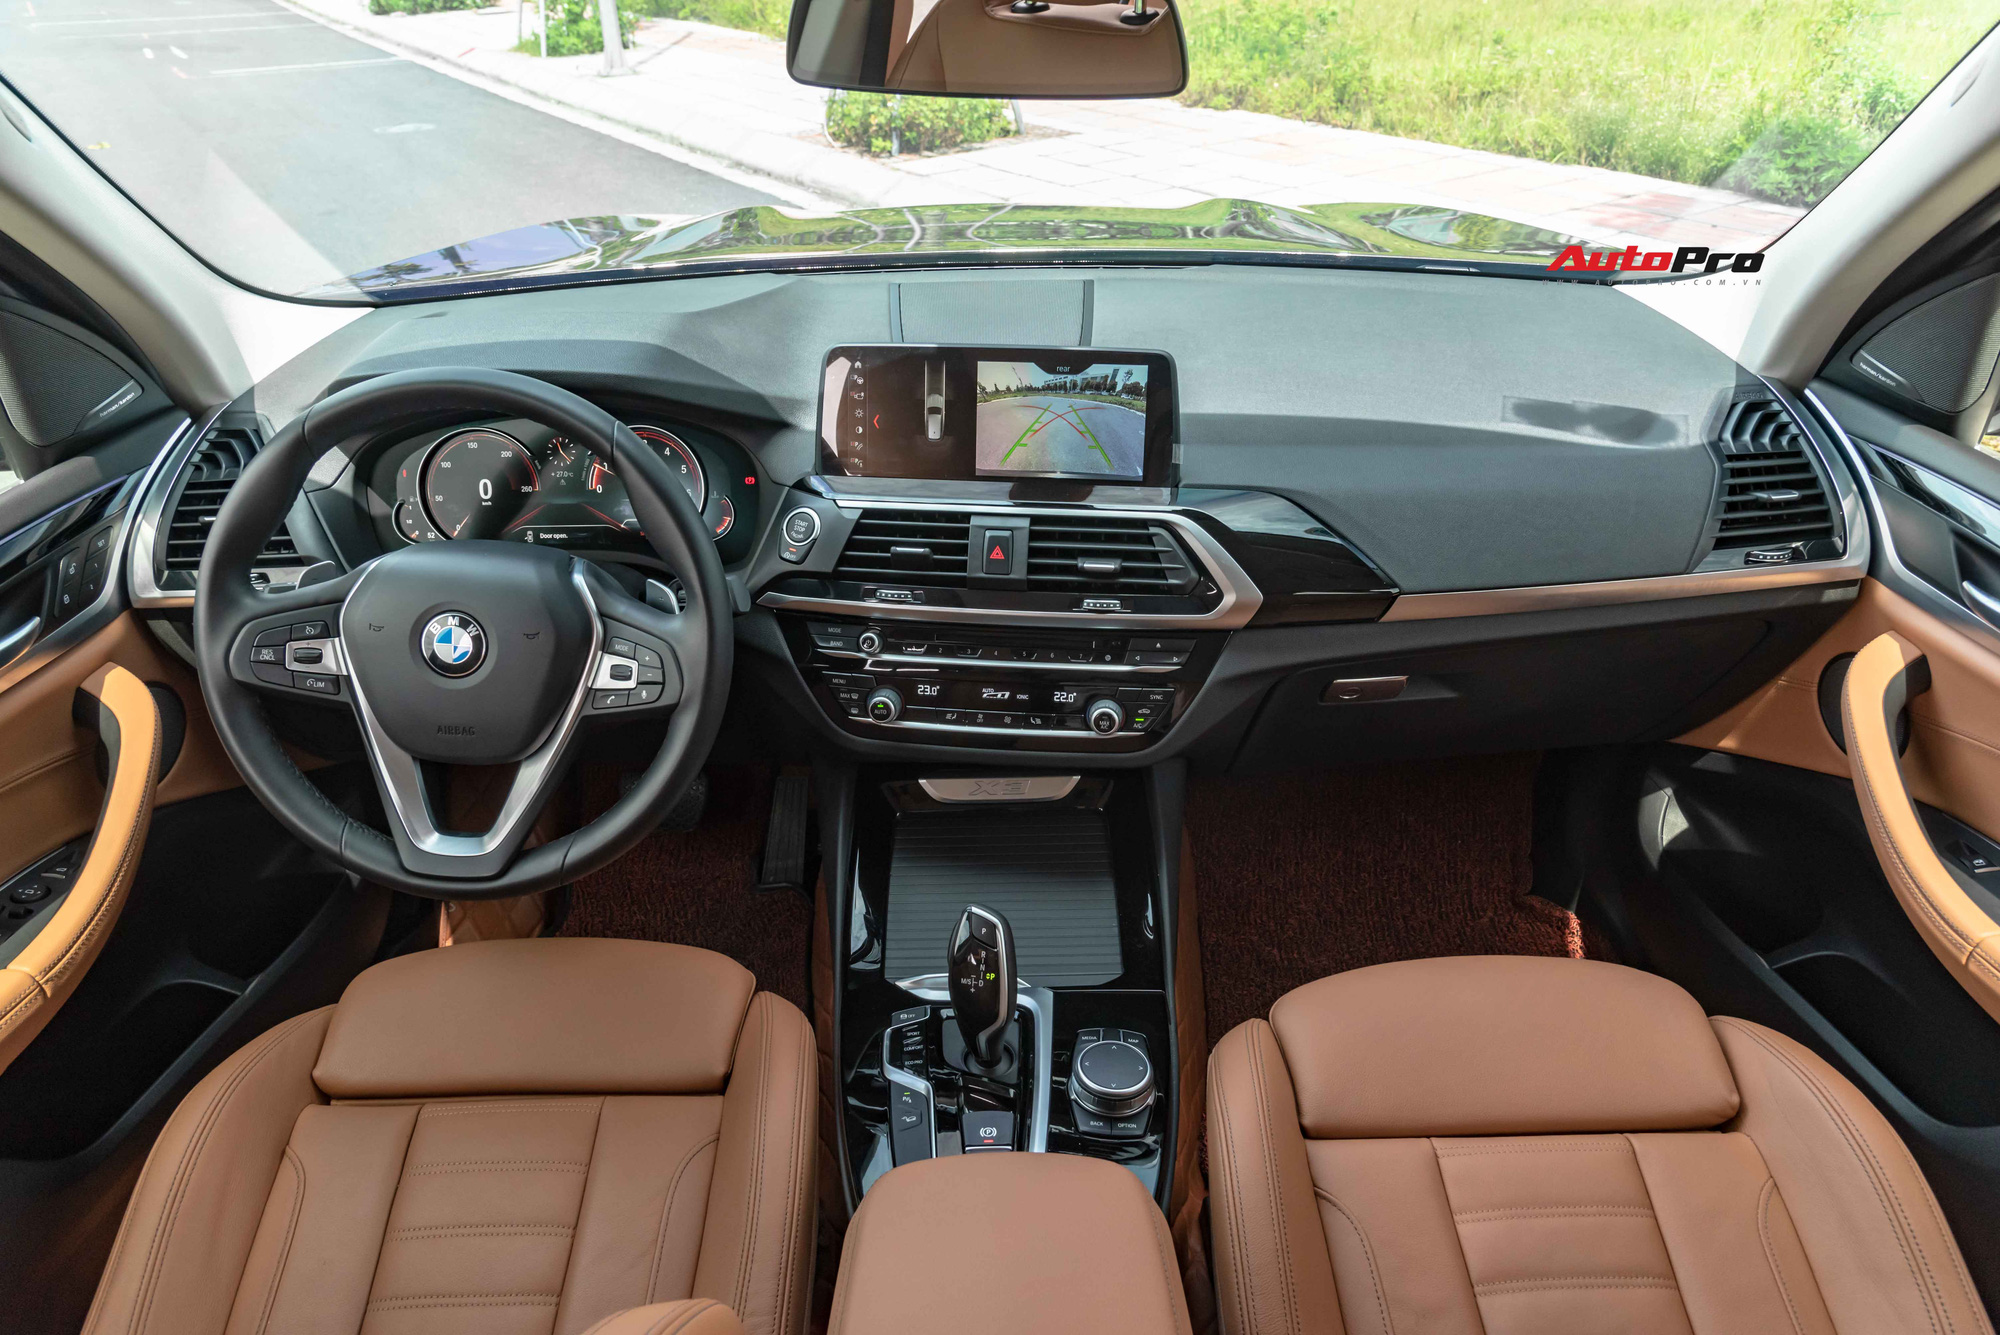 Chủ xe BMW X3 quyết định chia tay chỉ sau 12.000km, giá bán lại gần bằng tiền mua xe mới tại đại lý - Ảnh 4.